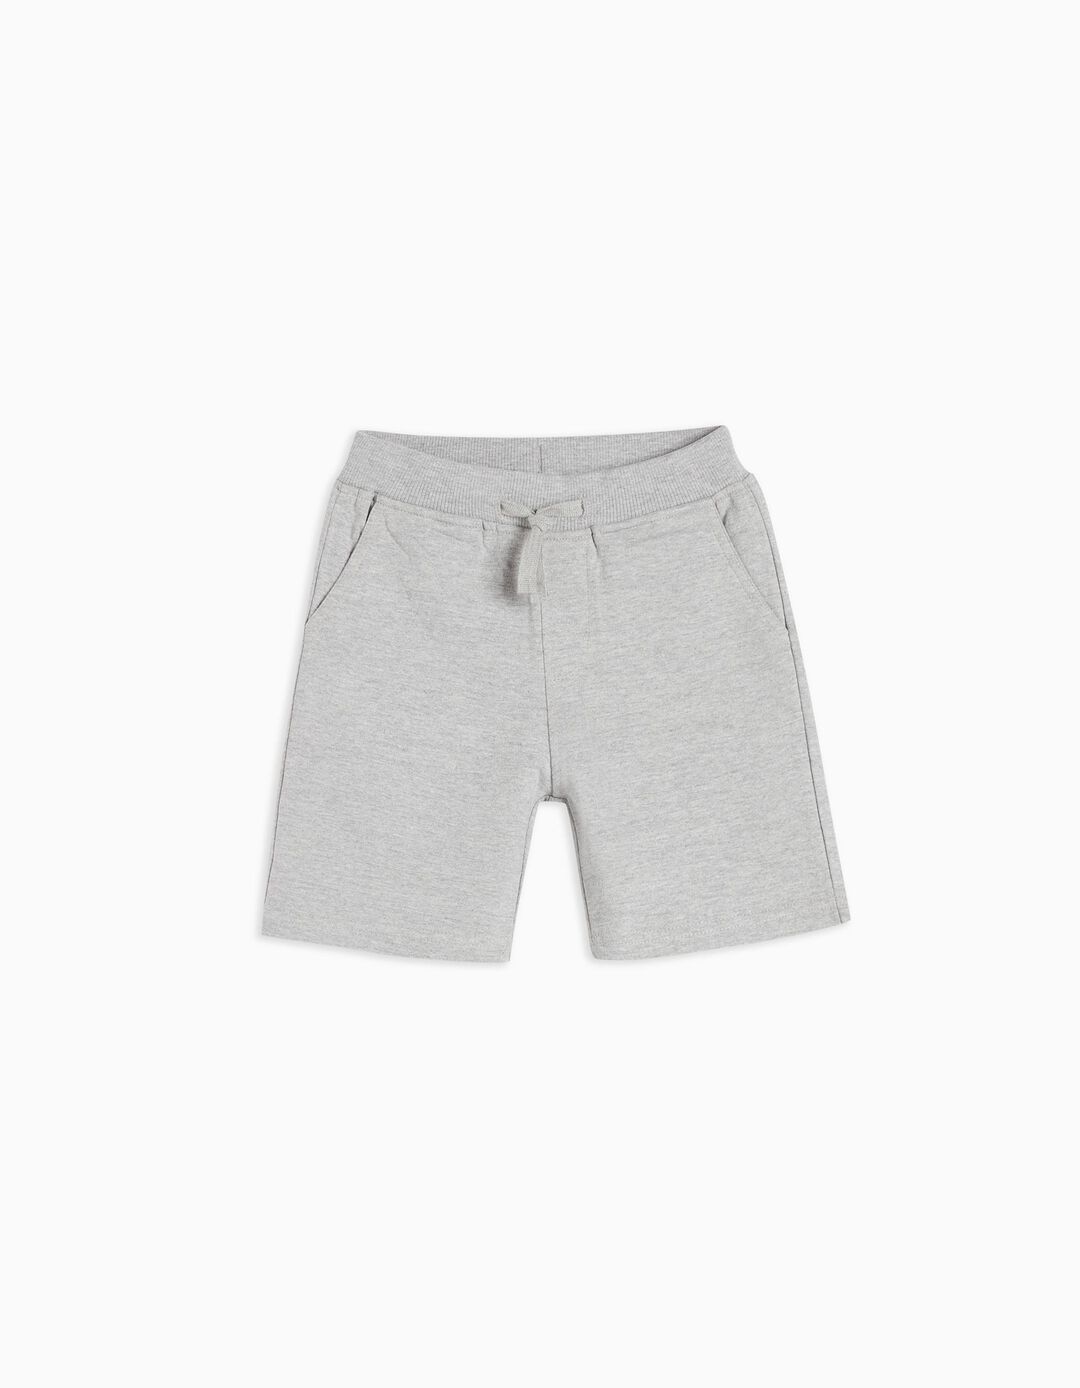 Fleece Shorts, Boys, Grey